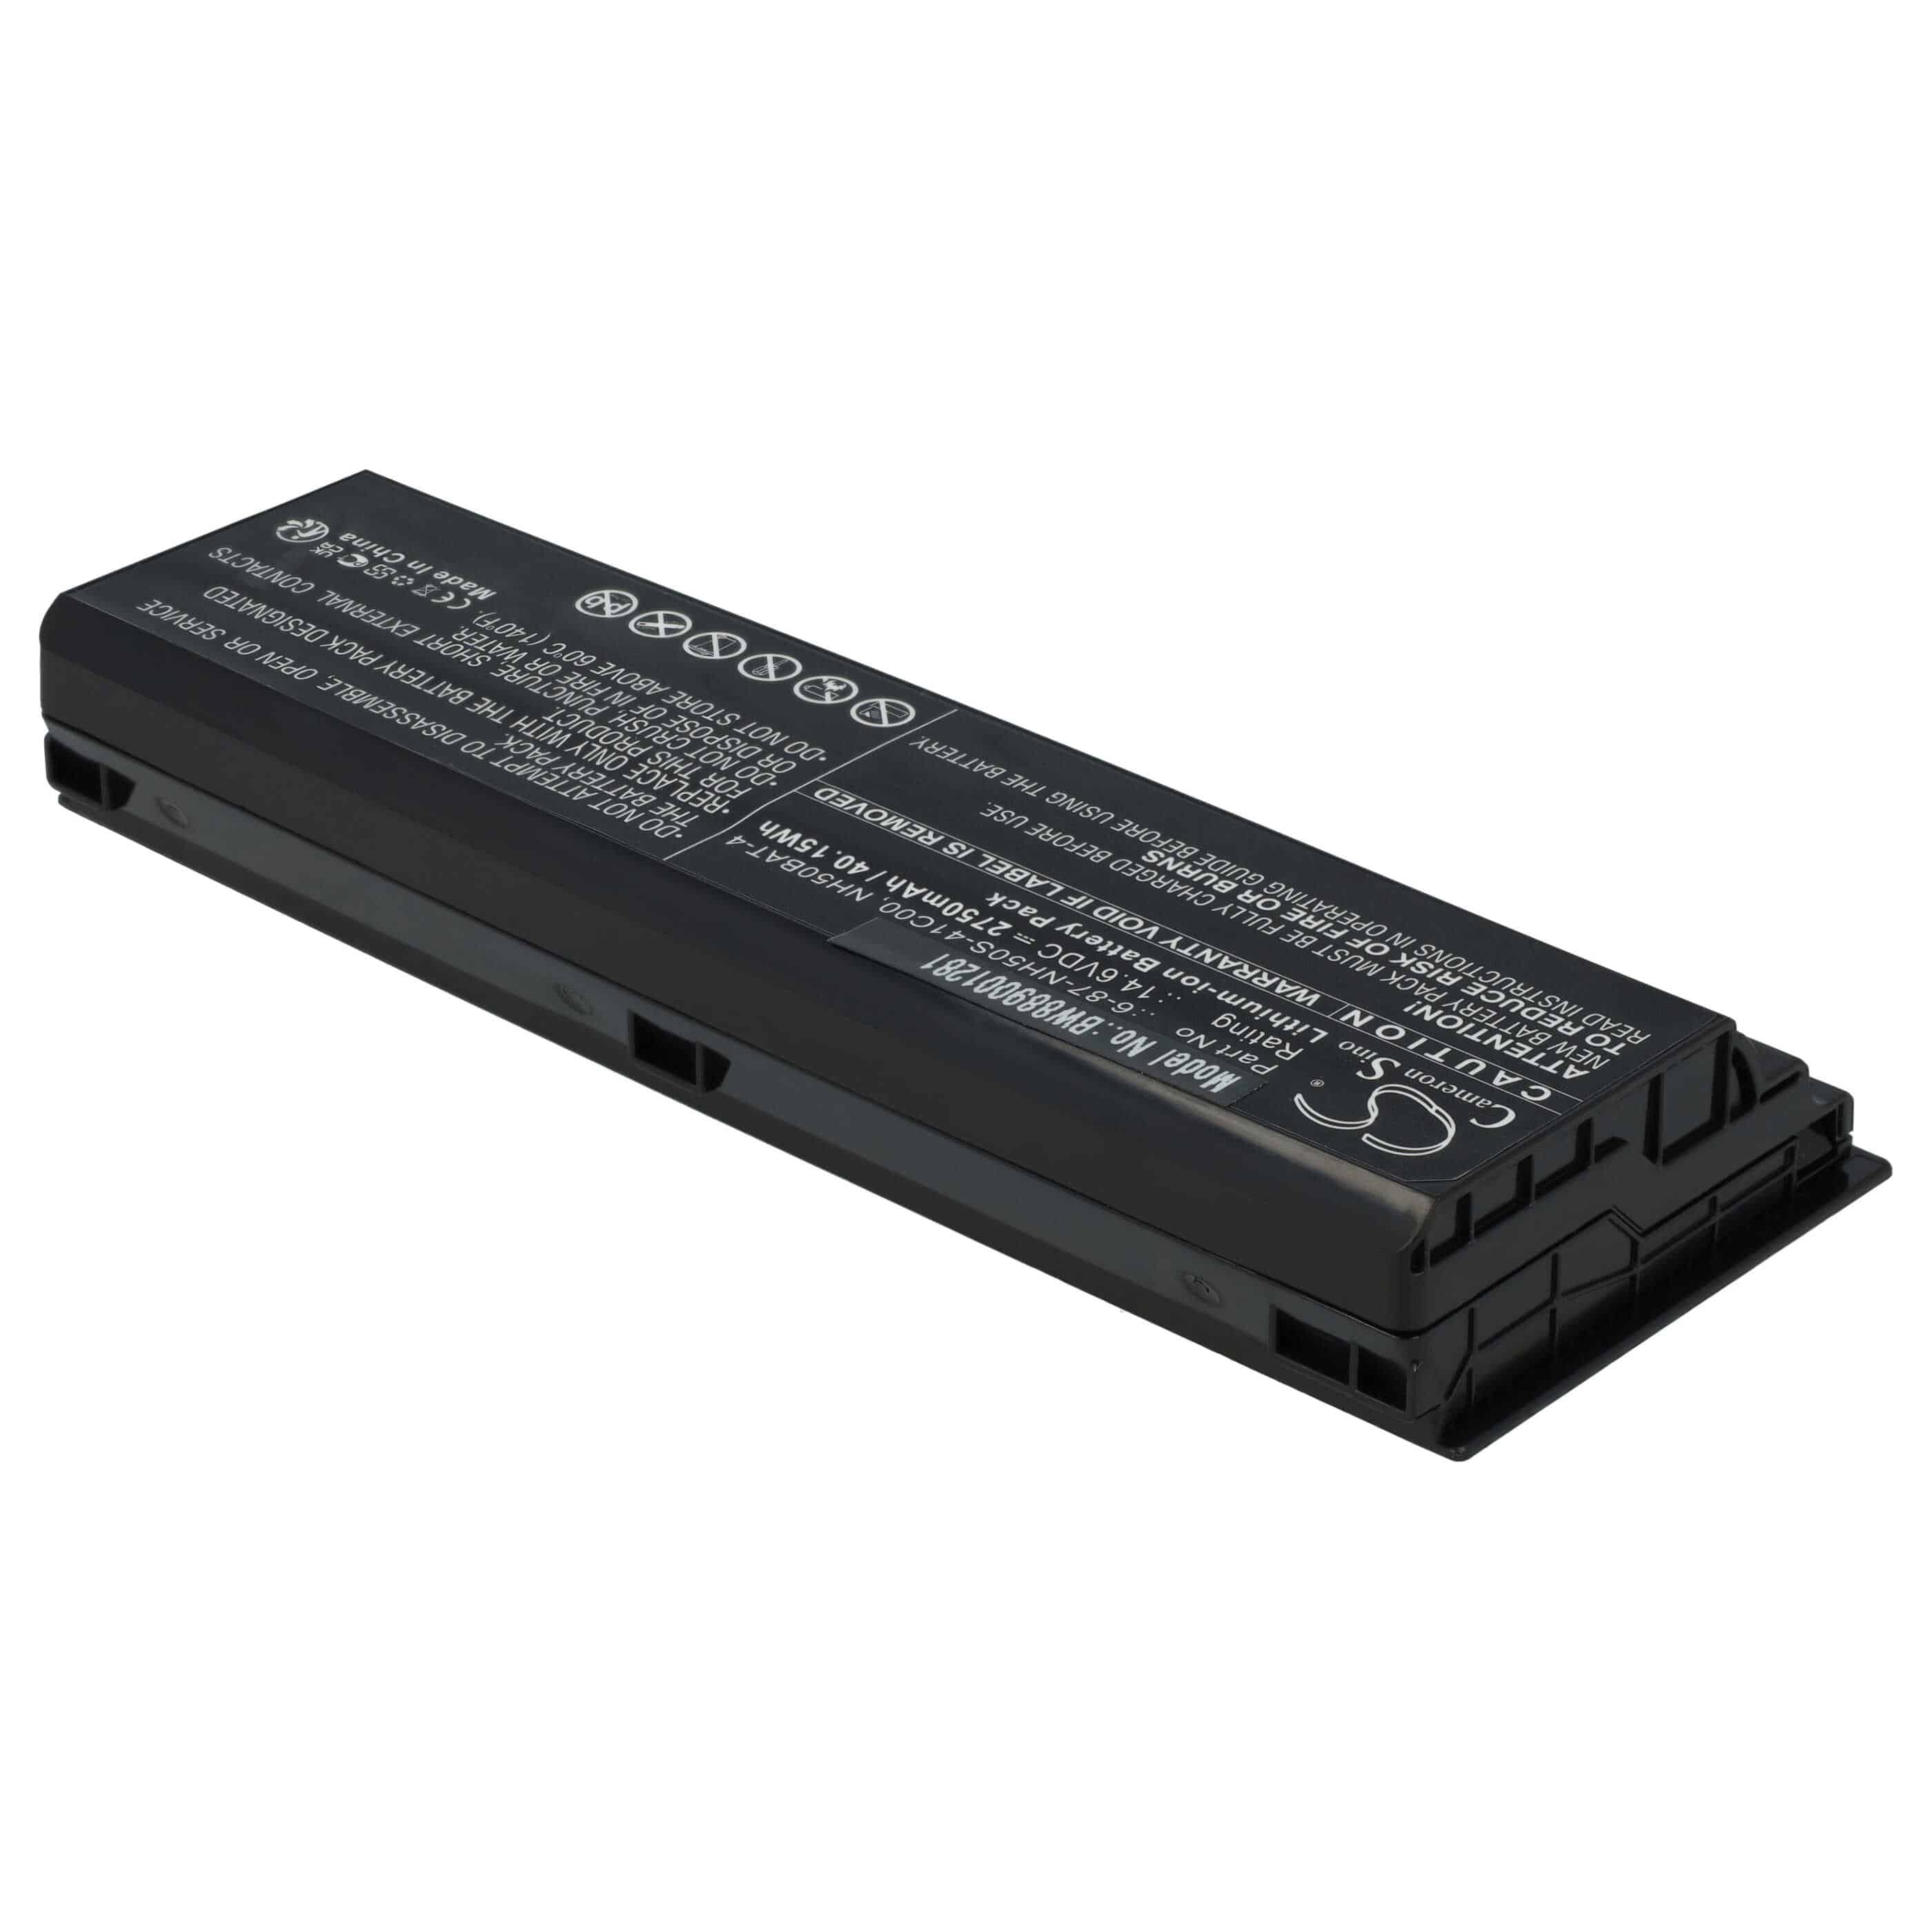 Batterie remplace Clevo NH50BAT-4, 6-87-NH50S-41C00 pour ordinateur portable - 2750mAh 14,6V Li-ion